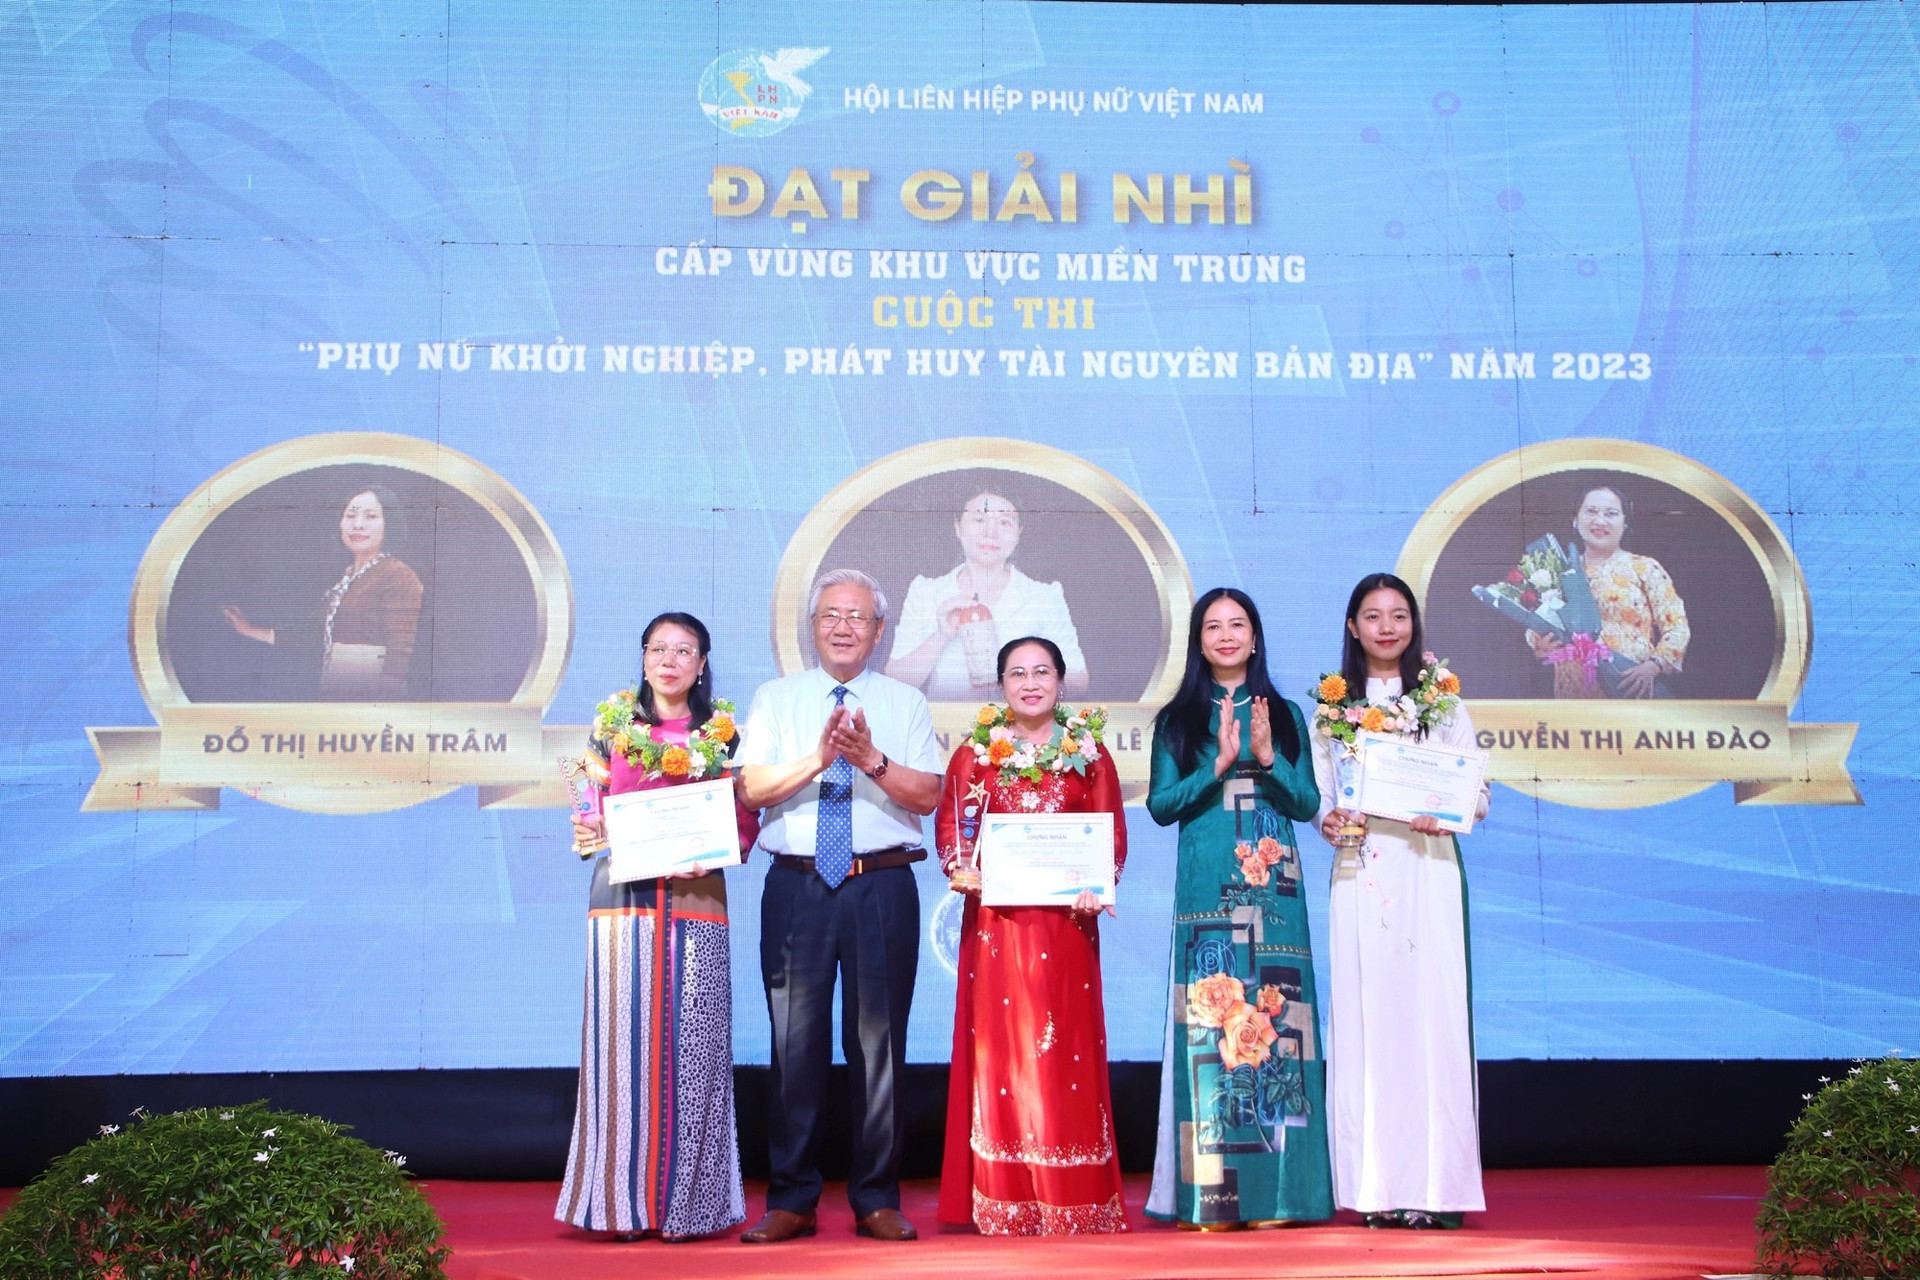 Tác giả Nguyễn Thị Hồng Lê ngoài cùng bên trái nhận giải Nhì cấp vùng miền Trung cuộc thi “Phụ nữ khởi nghiệp, phát huy tài năng bản địa” năm 2023. Ảnh: BTC